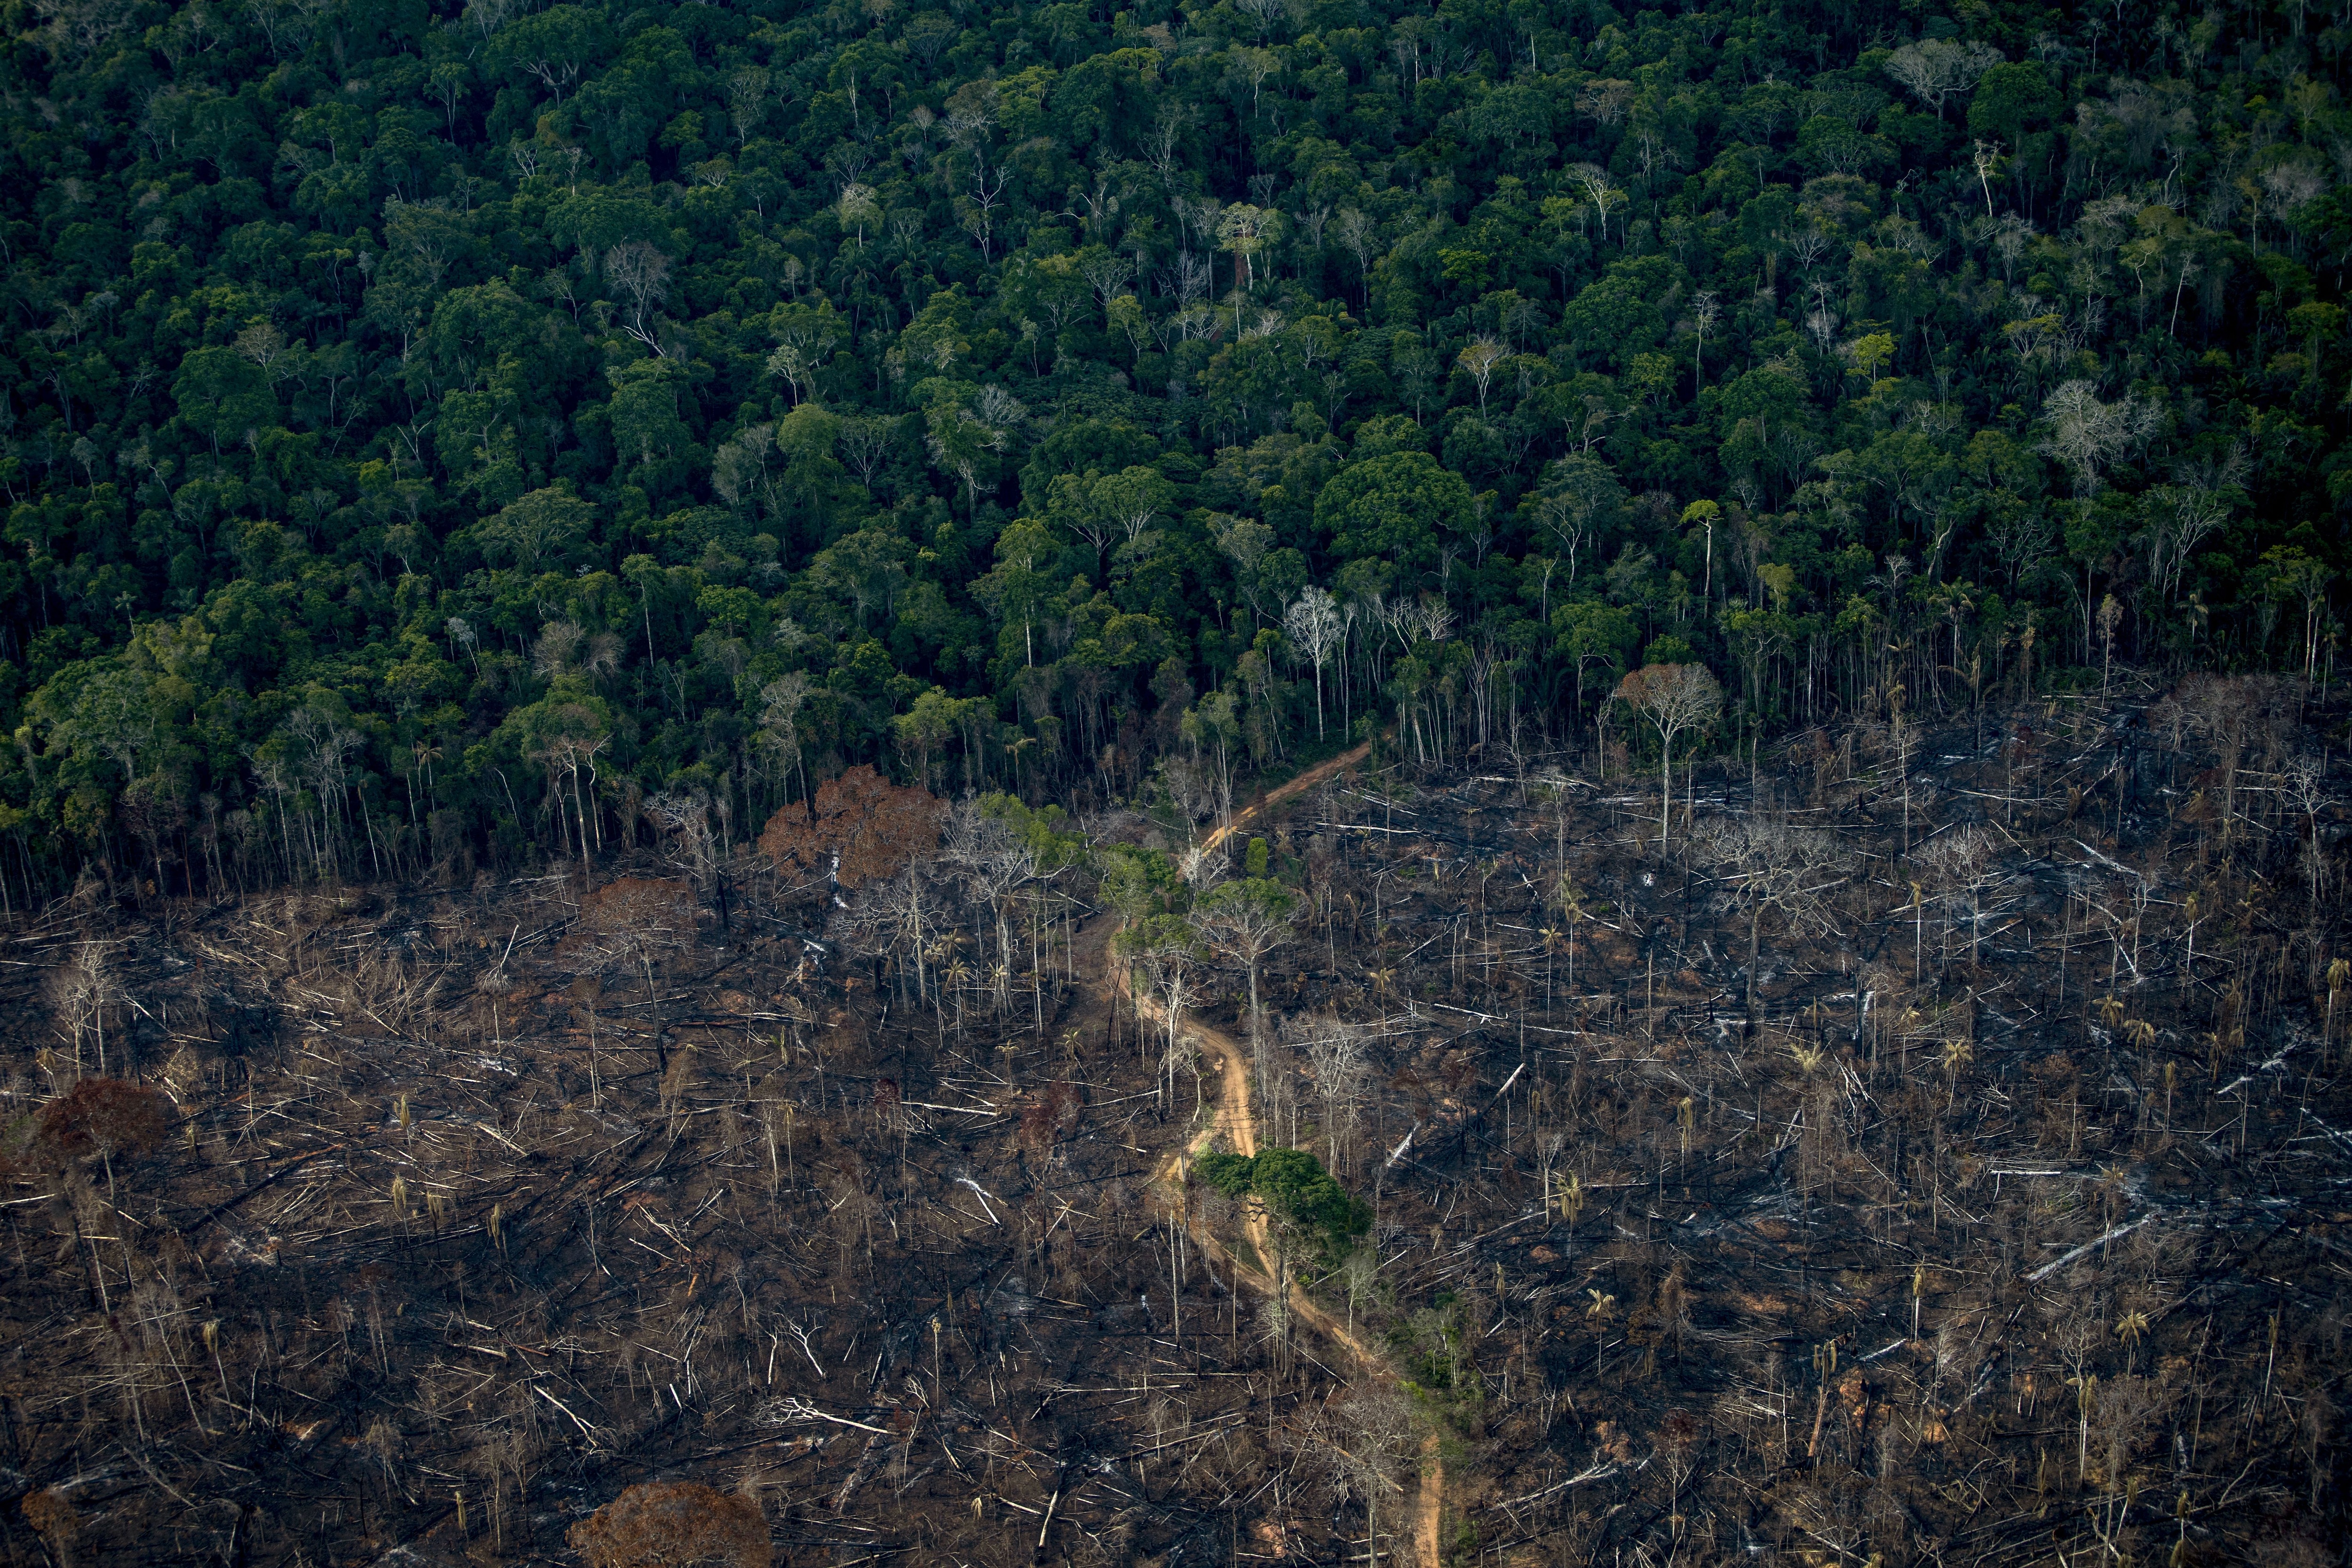 BRAZIL UN COP26 CLIMATE AMAZON